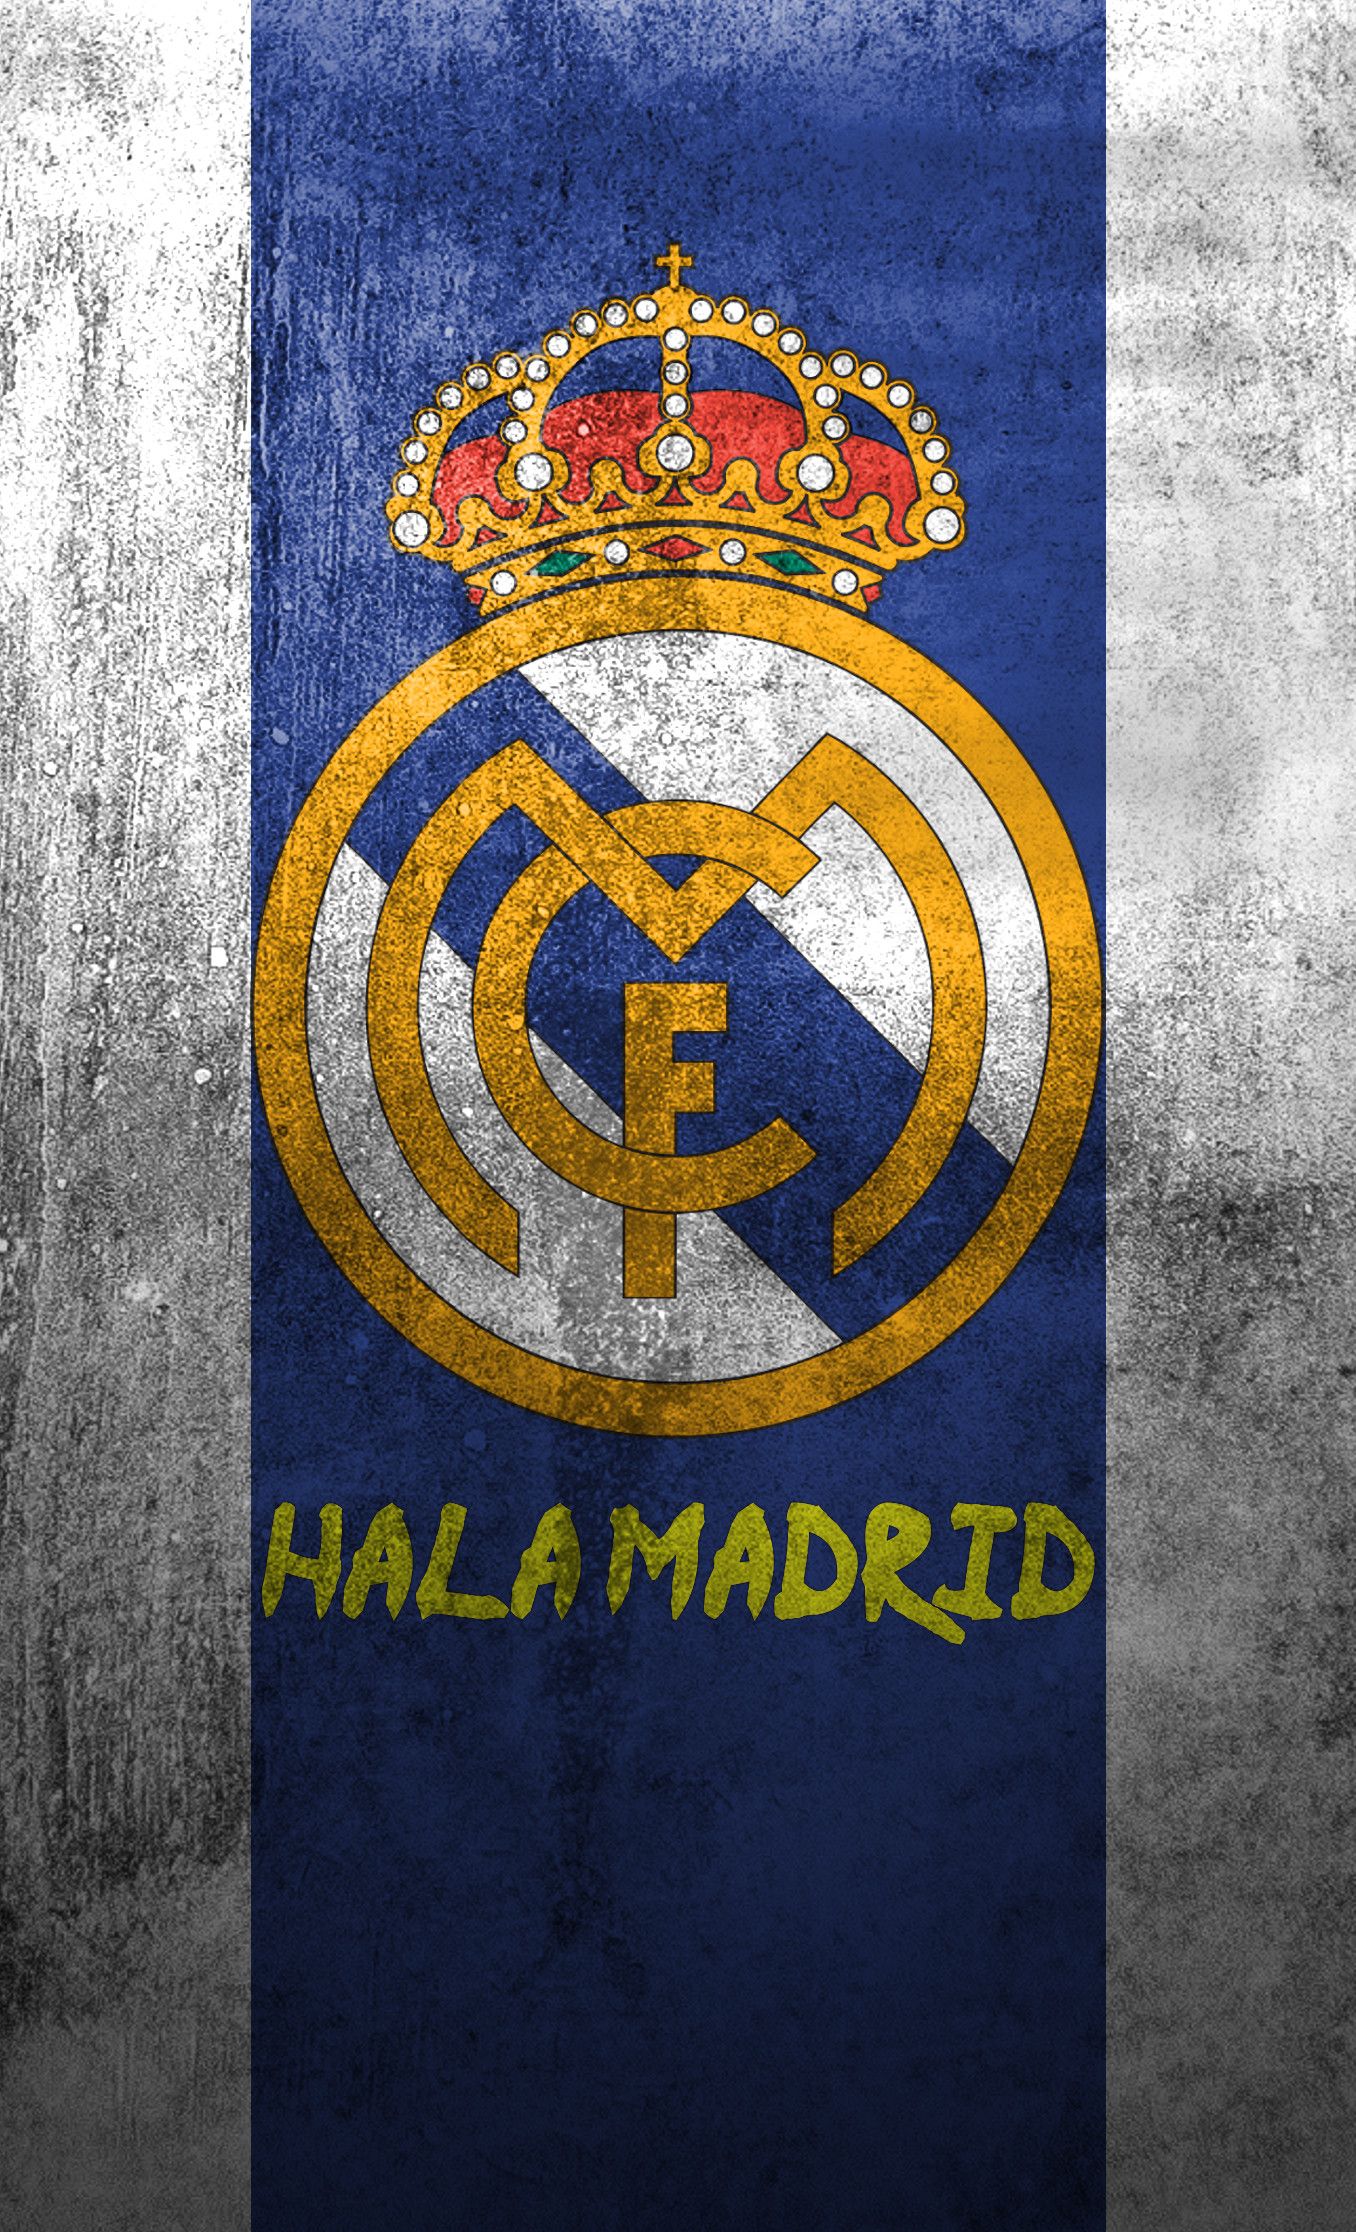 Logo Real Madrid luôn là biểu tượng đặc trưng cho đội bóng nổi tiếng này. Với những thiết kế ấn tượng và độc đáo, bạn sẽ luôn tự hào khi sử dụng logo Real Madrid trên áo đấu, cốc thủy tinh hay bất cứ vật dụng nào. Tìm hiểu thêm về logo Real Madrid tại địa chỉ...